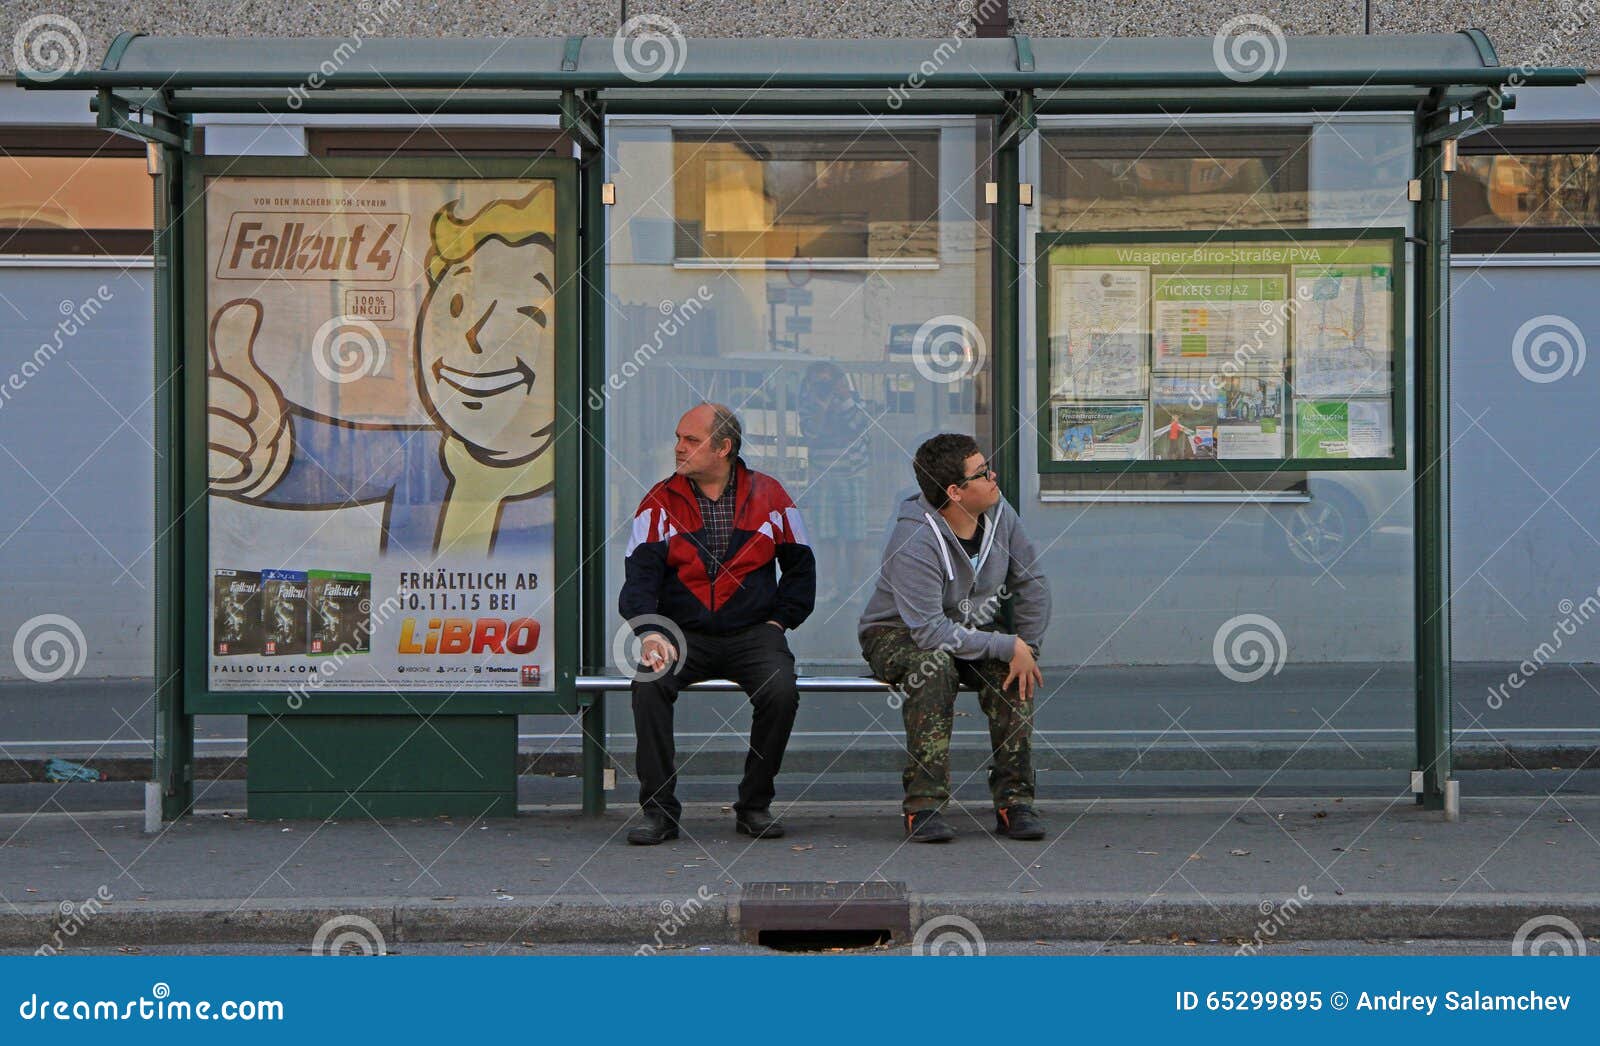 Аня ждет автобус на остановке изобразите. Люди на остановке. Мужчина на остановке ждет. Автобусная остановка с людьми. Парень на остановке.